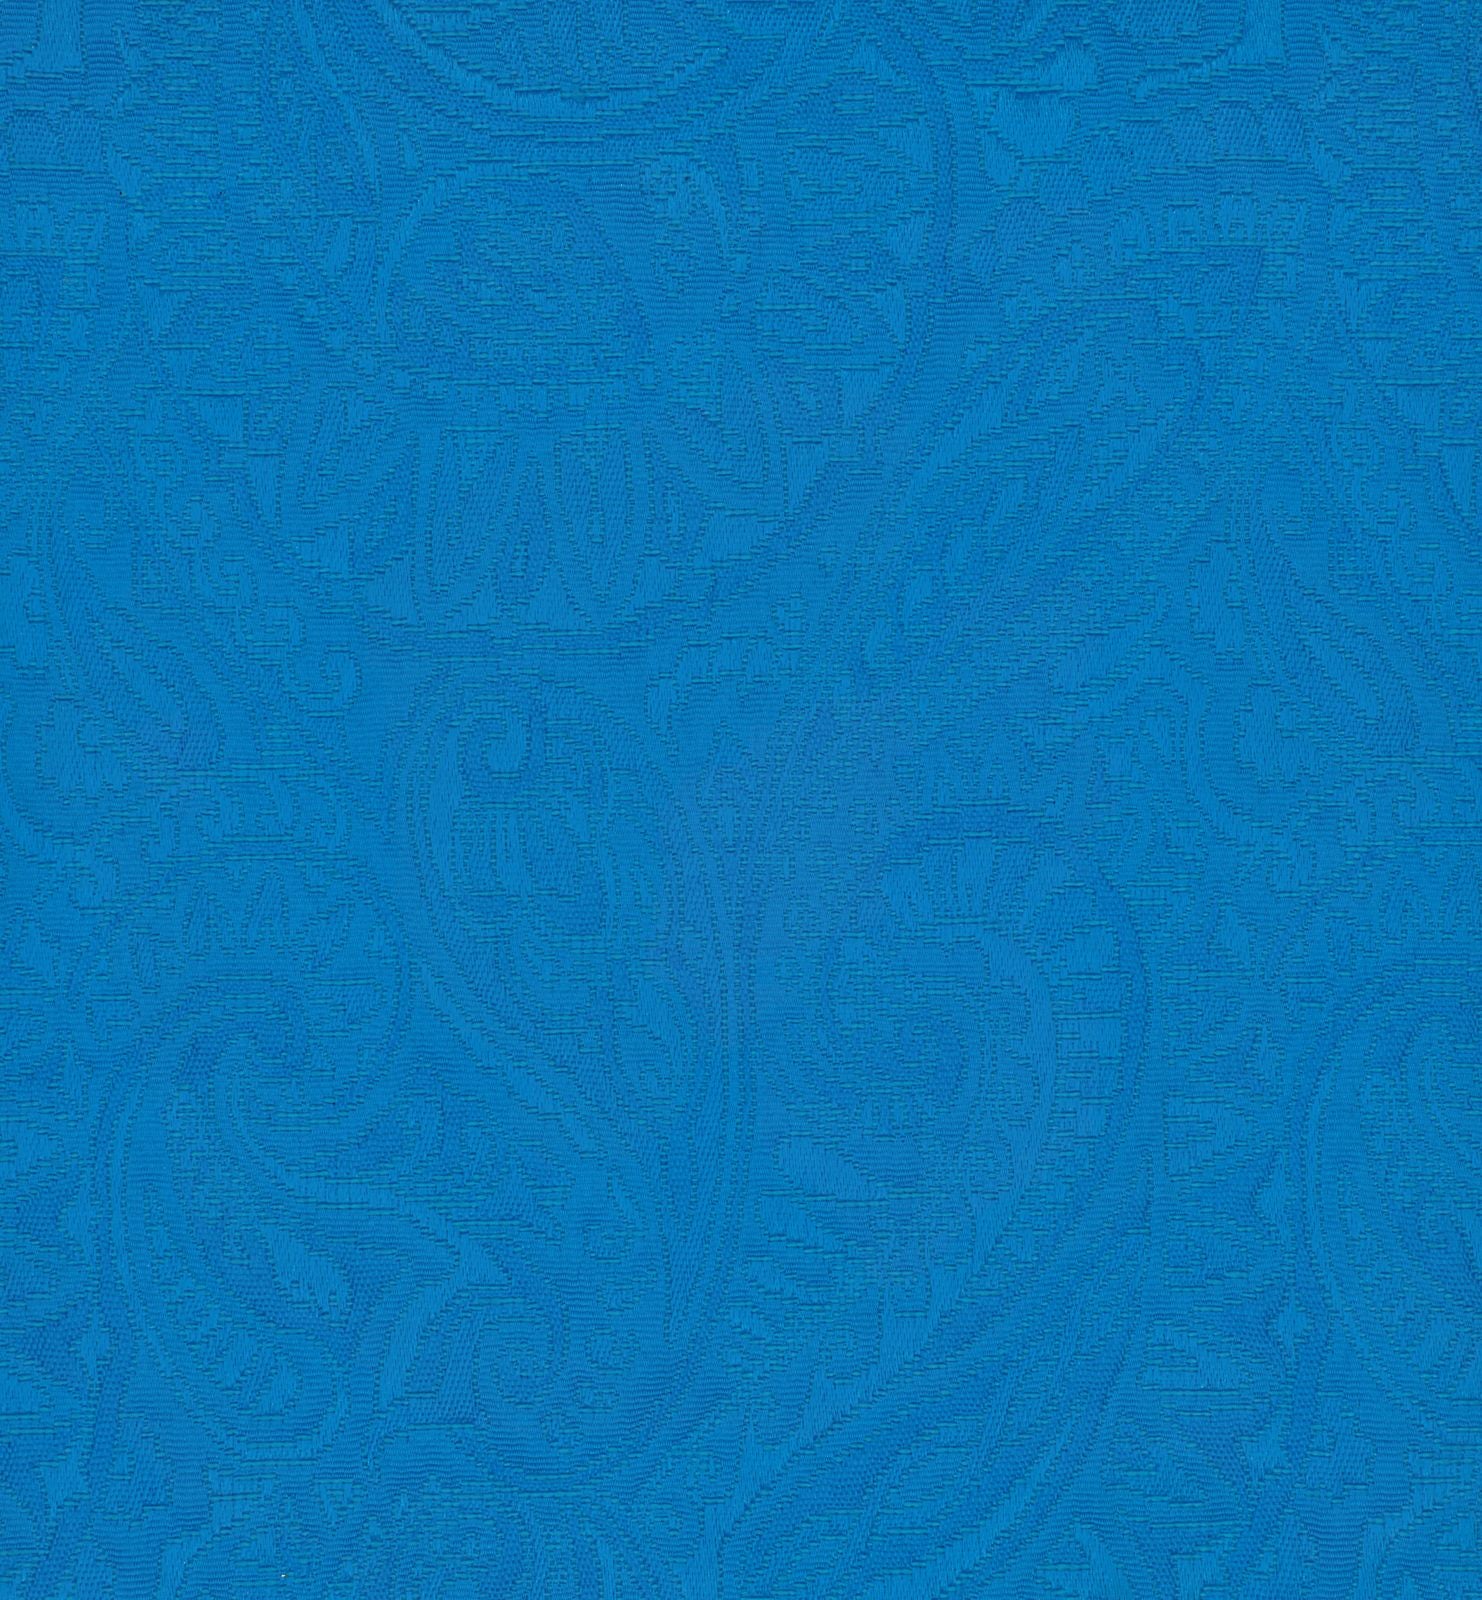 33001-05 Sky Blue Woven Jacqaurd Plain Dyed Blend 296g/yd 54&quot; blend blue cotton jacqaurd plain dyed polyester woven Solid Color, Jacquard - knit fabric - woven fabric - fabric company - fabric wholesale - fabric b2b - fabric factory - high quality fabric - hong kong fabric - fabric hk - acetate fabric - cotton fabric - linen fabric - metallic fabric - nylon fabric - polyester fabric - spandex fabric - chun wing hing - cwh hk - fabric worldwide ship - 針織布 - 梳織布 - 布料公司- 布料批發 - 香港布料 - 秦榮興